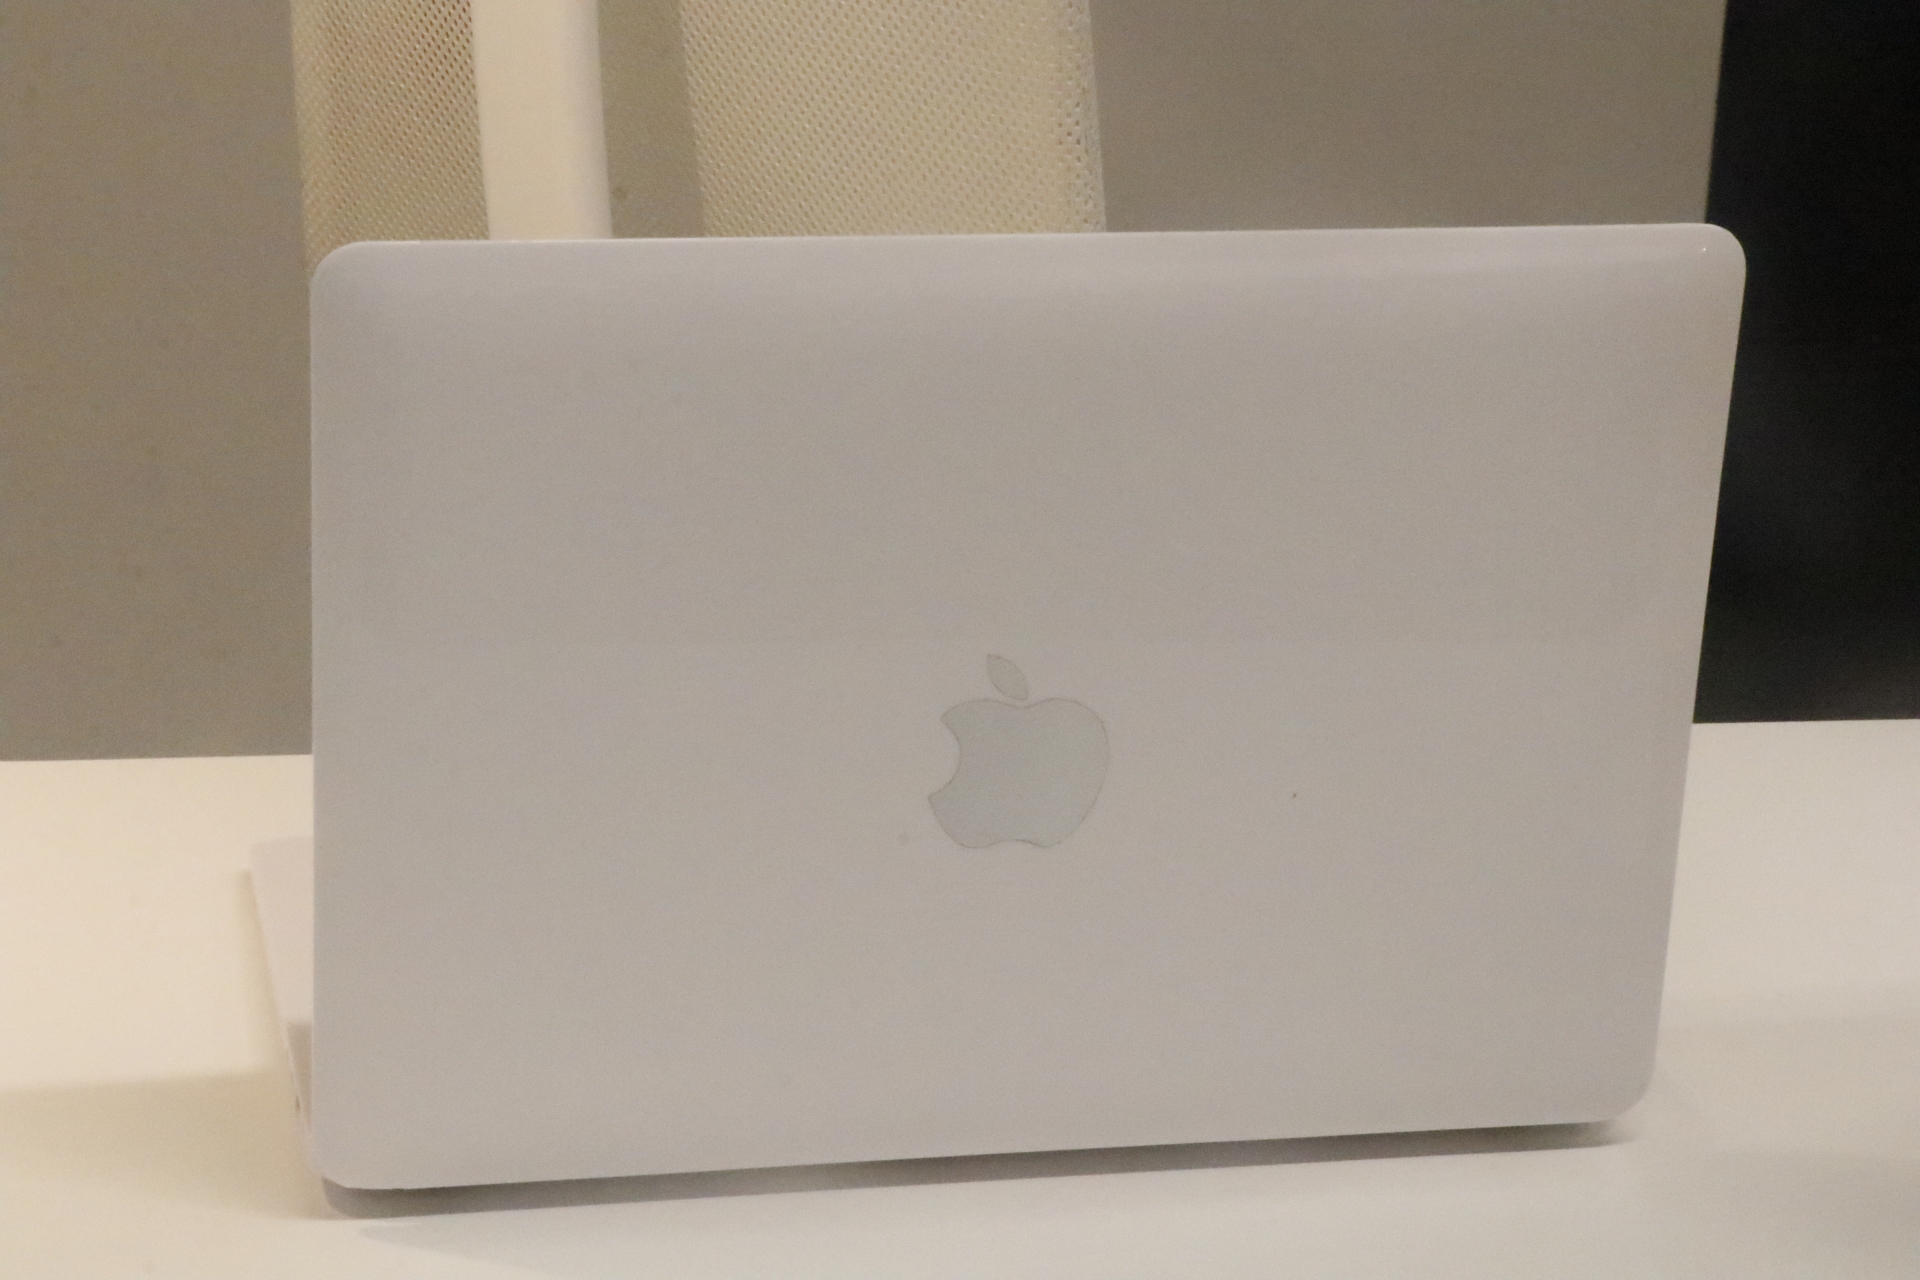 新MacBook Pro首发测评！极窄边框可变刷新率